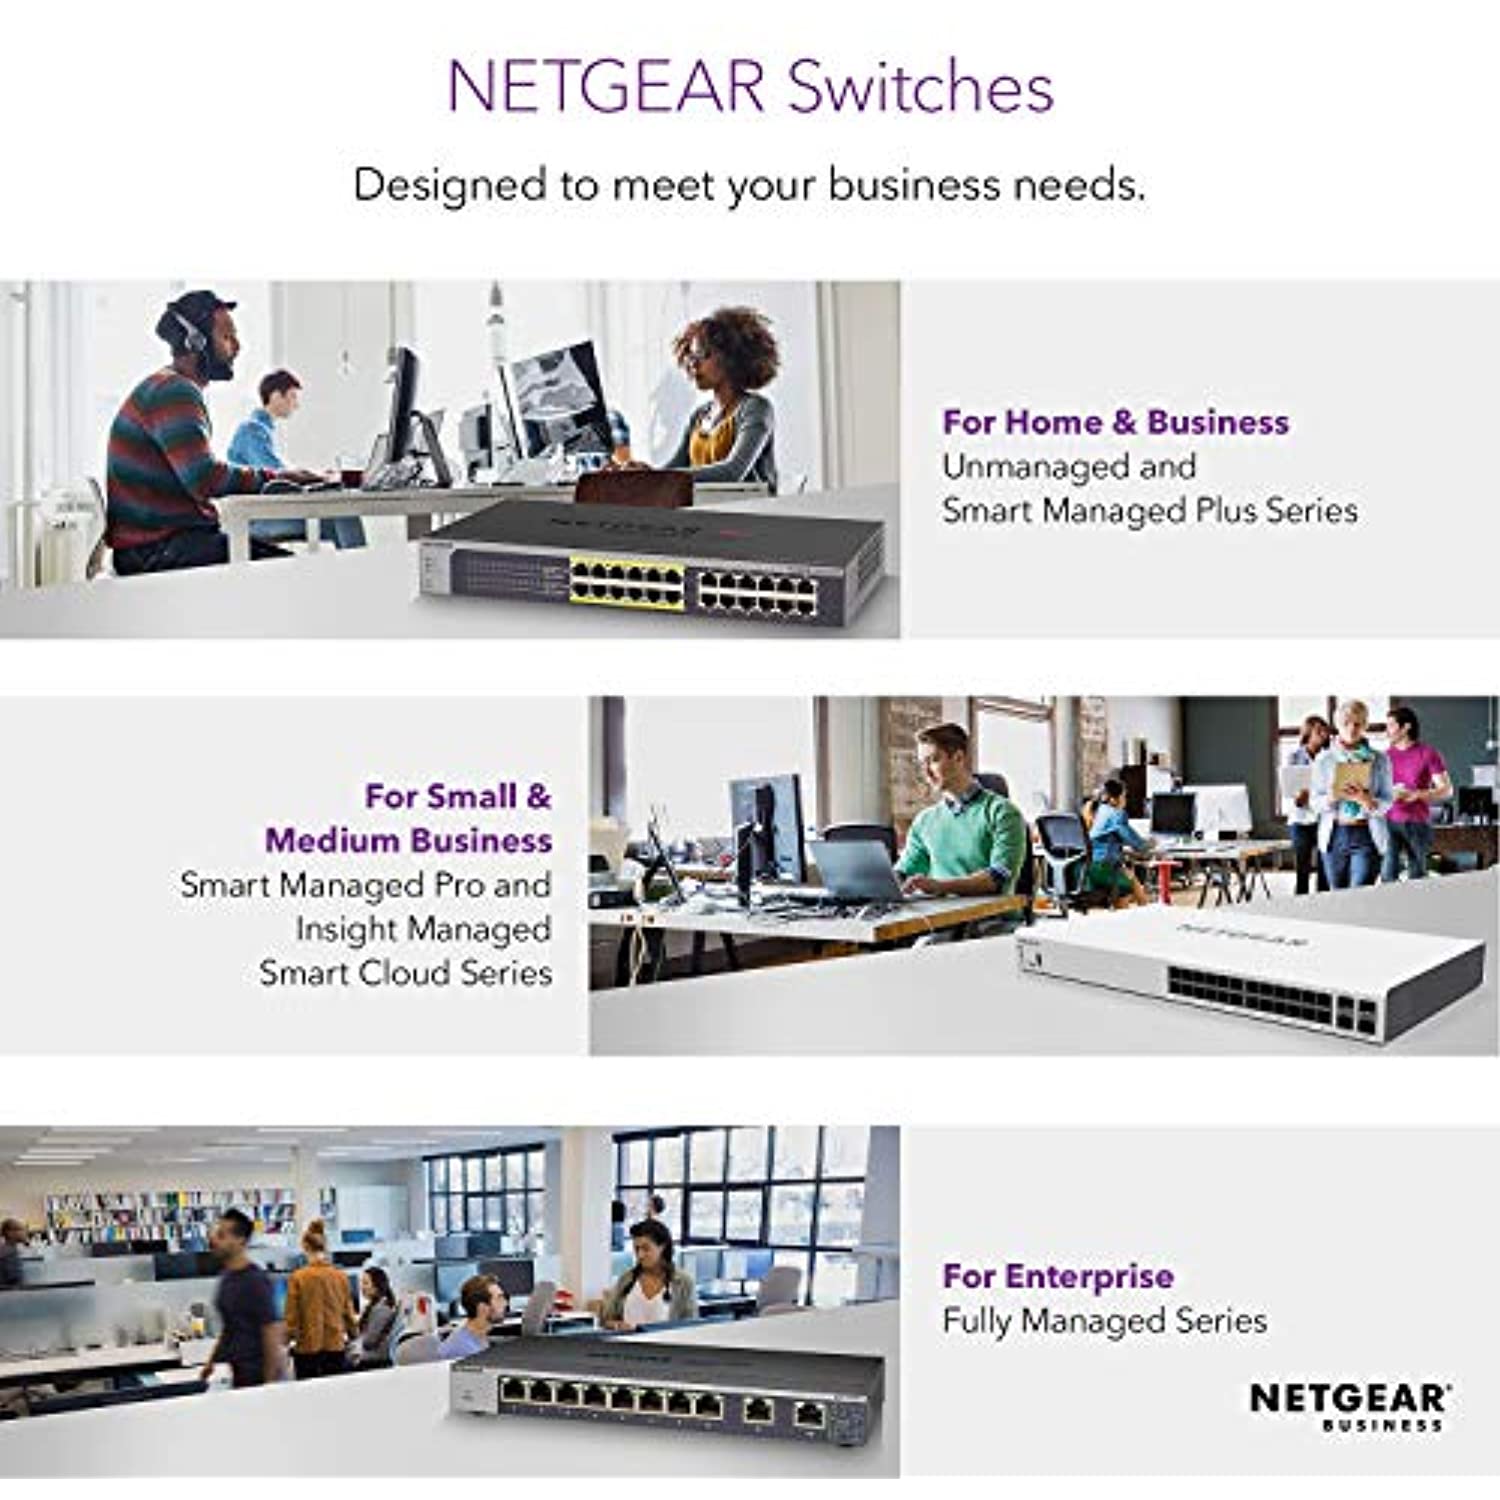 Netgear 5-Port Gigabit Ethernet Unmanaged Switch (Gs305) - Desktop Quiet  Fanless